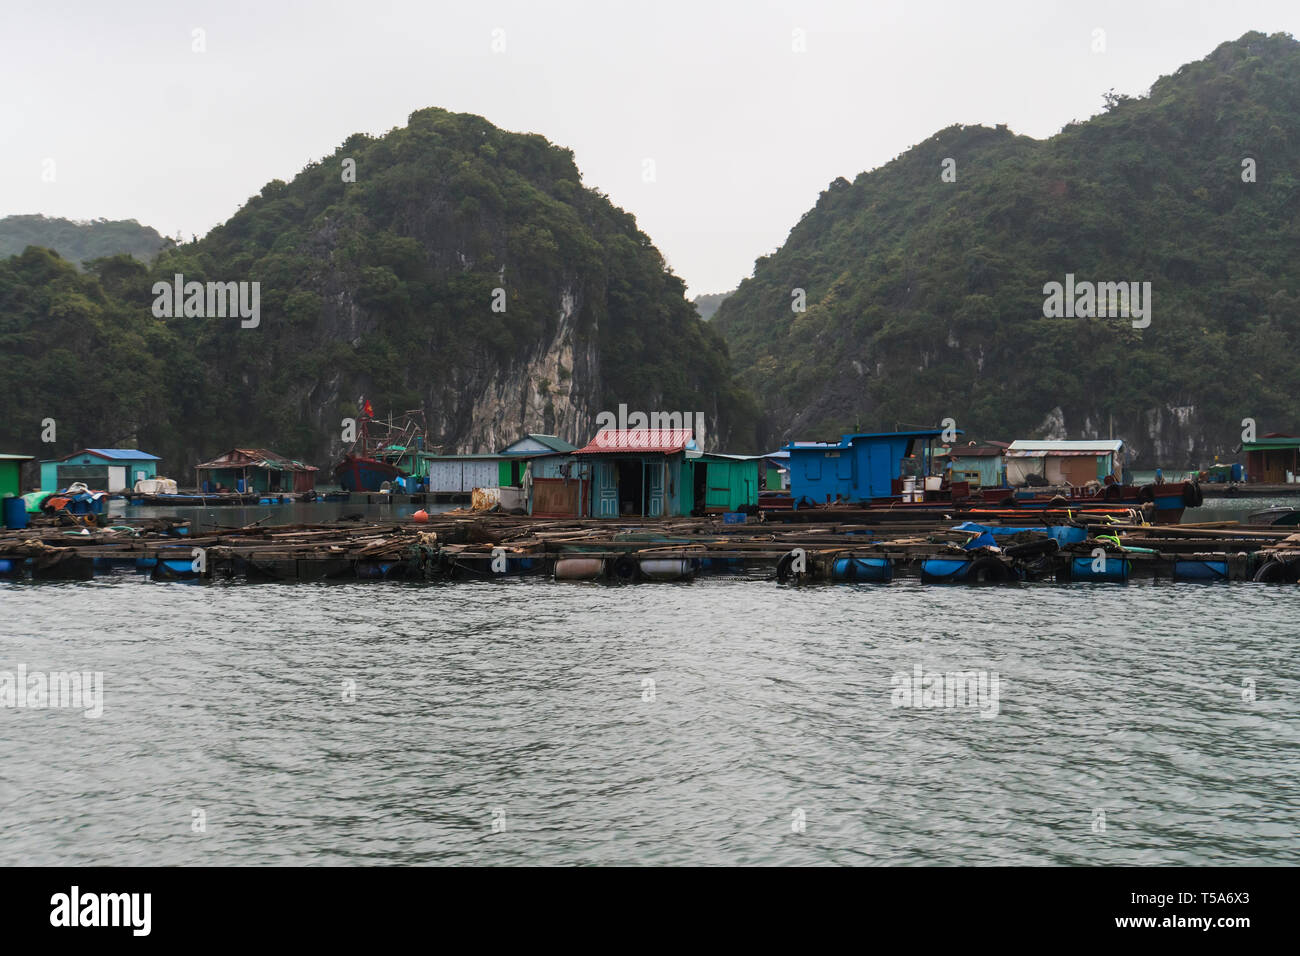 Village flottant de la baie d'Halong en Wan Kuah au Vietnam. Maisons sur l'eau. Côte Rocheuse. Saison des pluies d'hiver brouillard. Banque D'Images